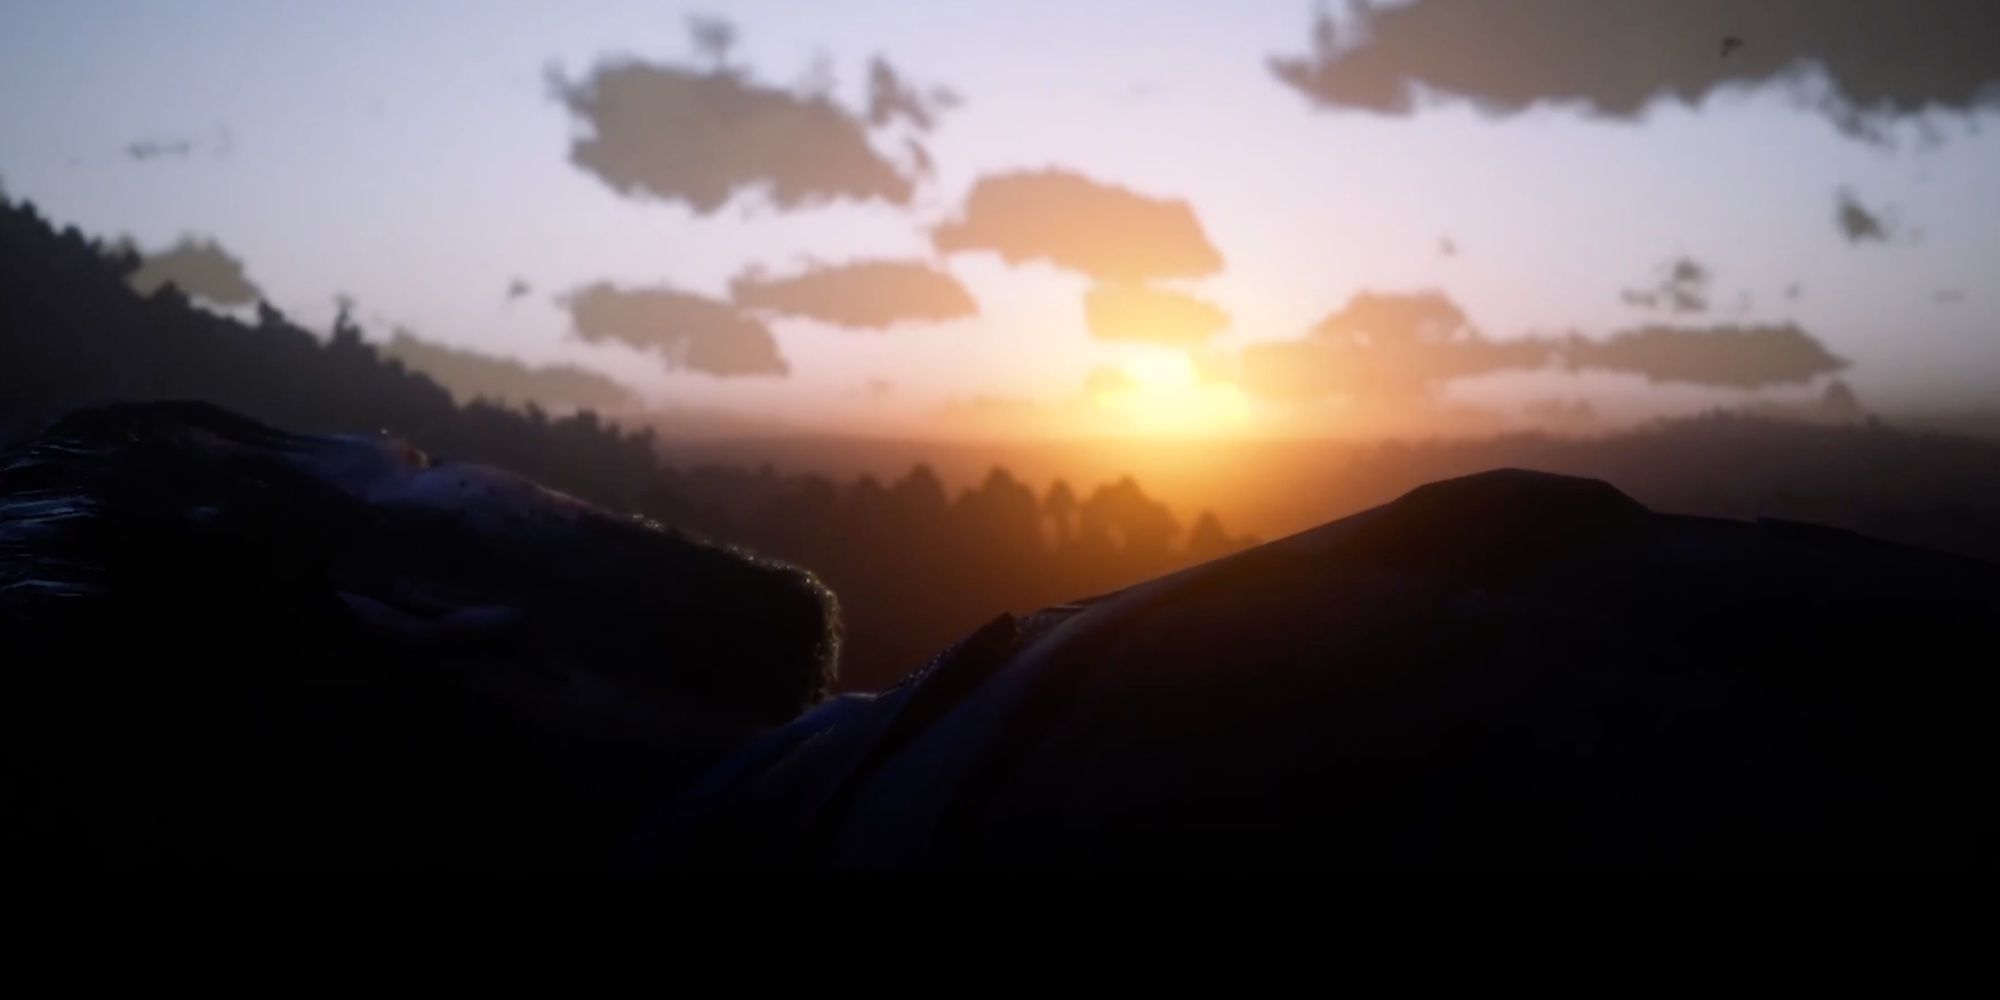 Red Dead Redemption 2 - Arthur's Last Sunrise